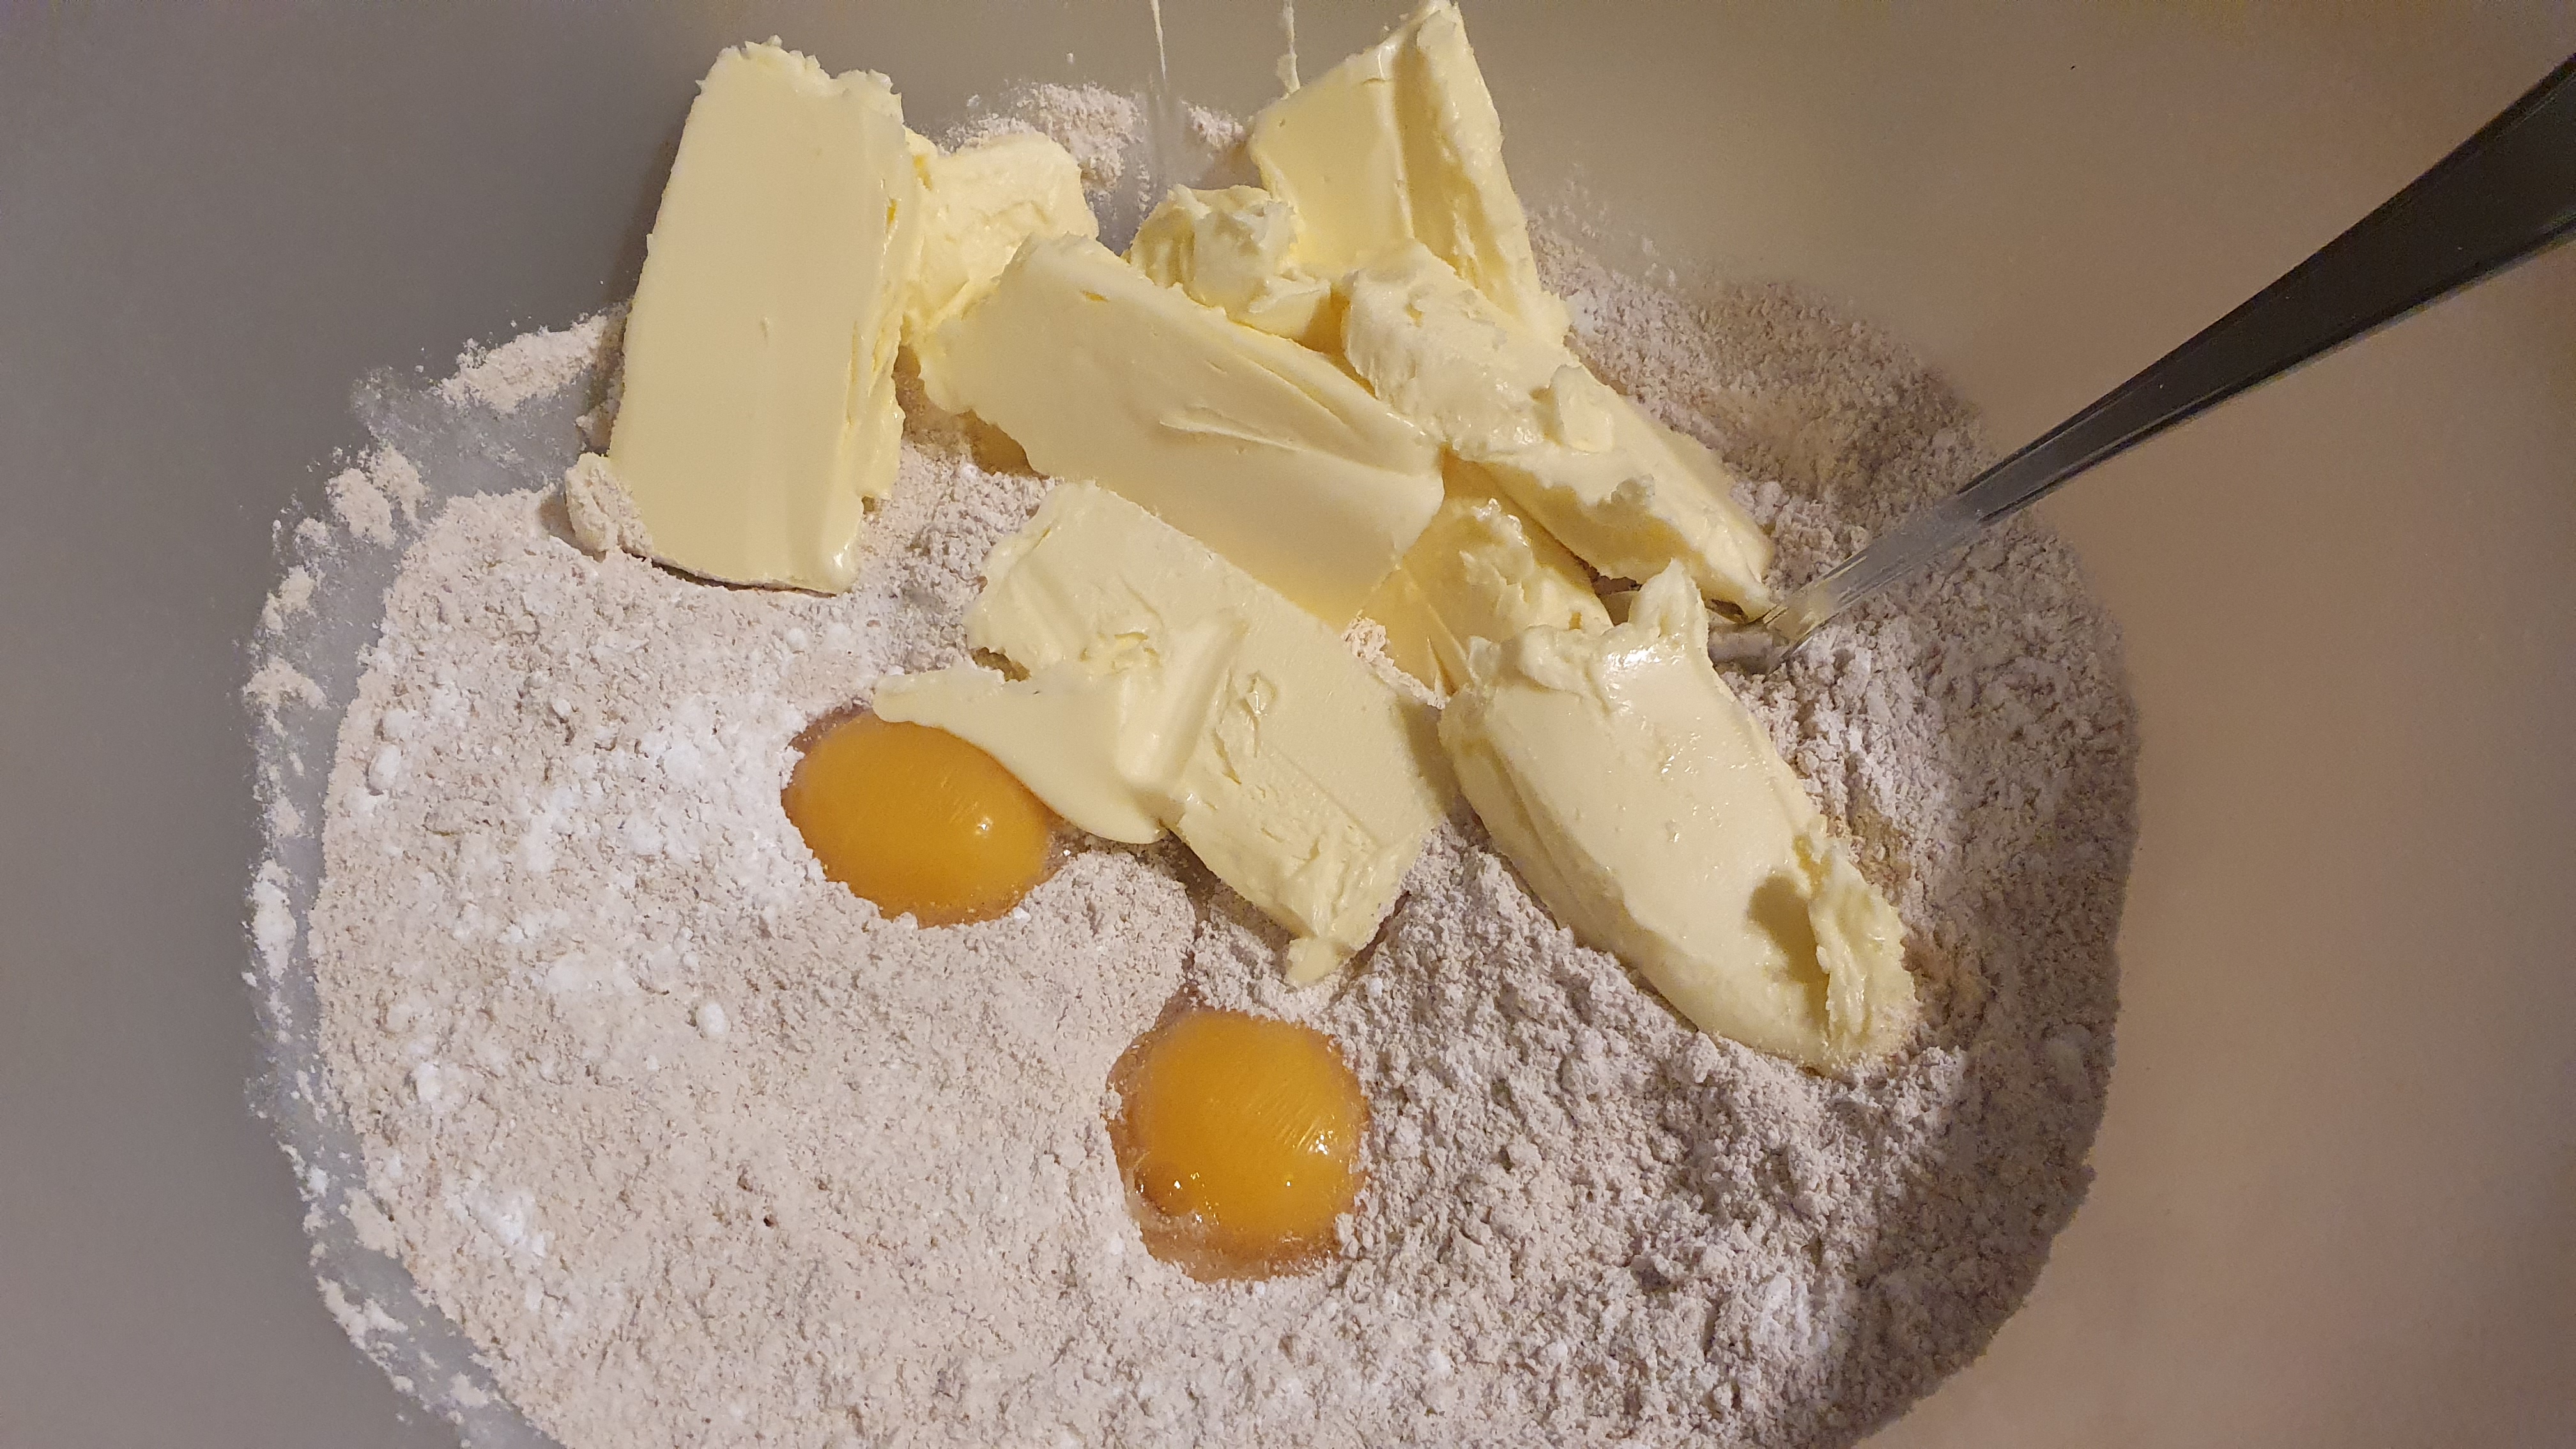 Maslo si vyberieme z chladničky o 3 hodiny skôr, aby zmäklo a zo všetkých ingrediencií vymiešame cesto. Zo začiatku sa nenecháme odradiť tým, že sa rozpadáva, časom sa spojí.